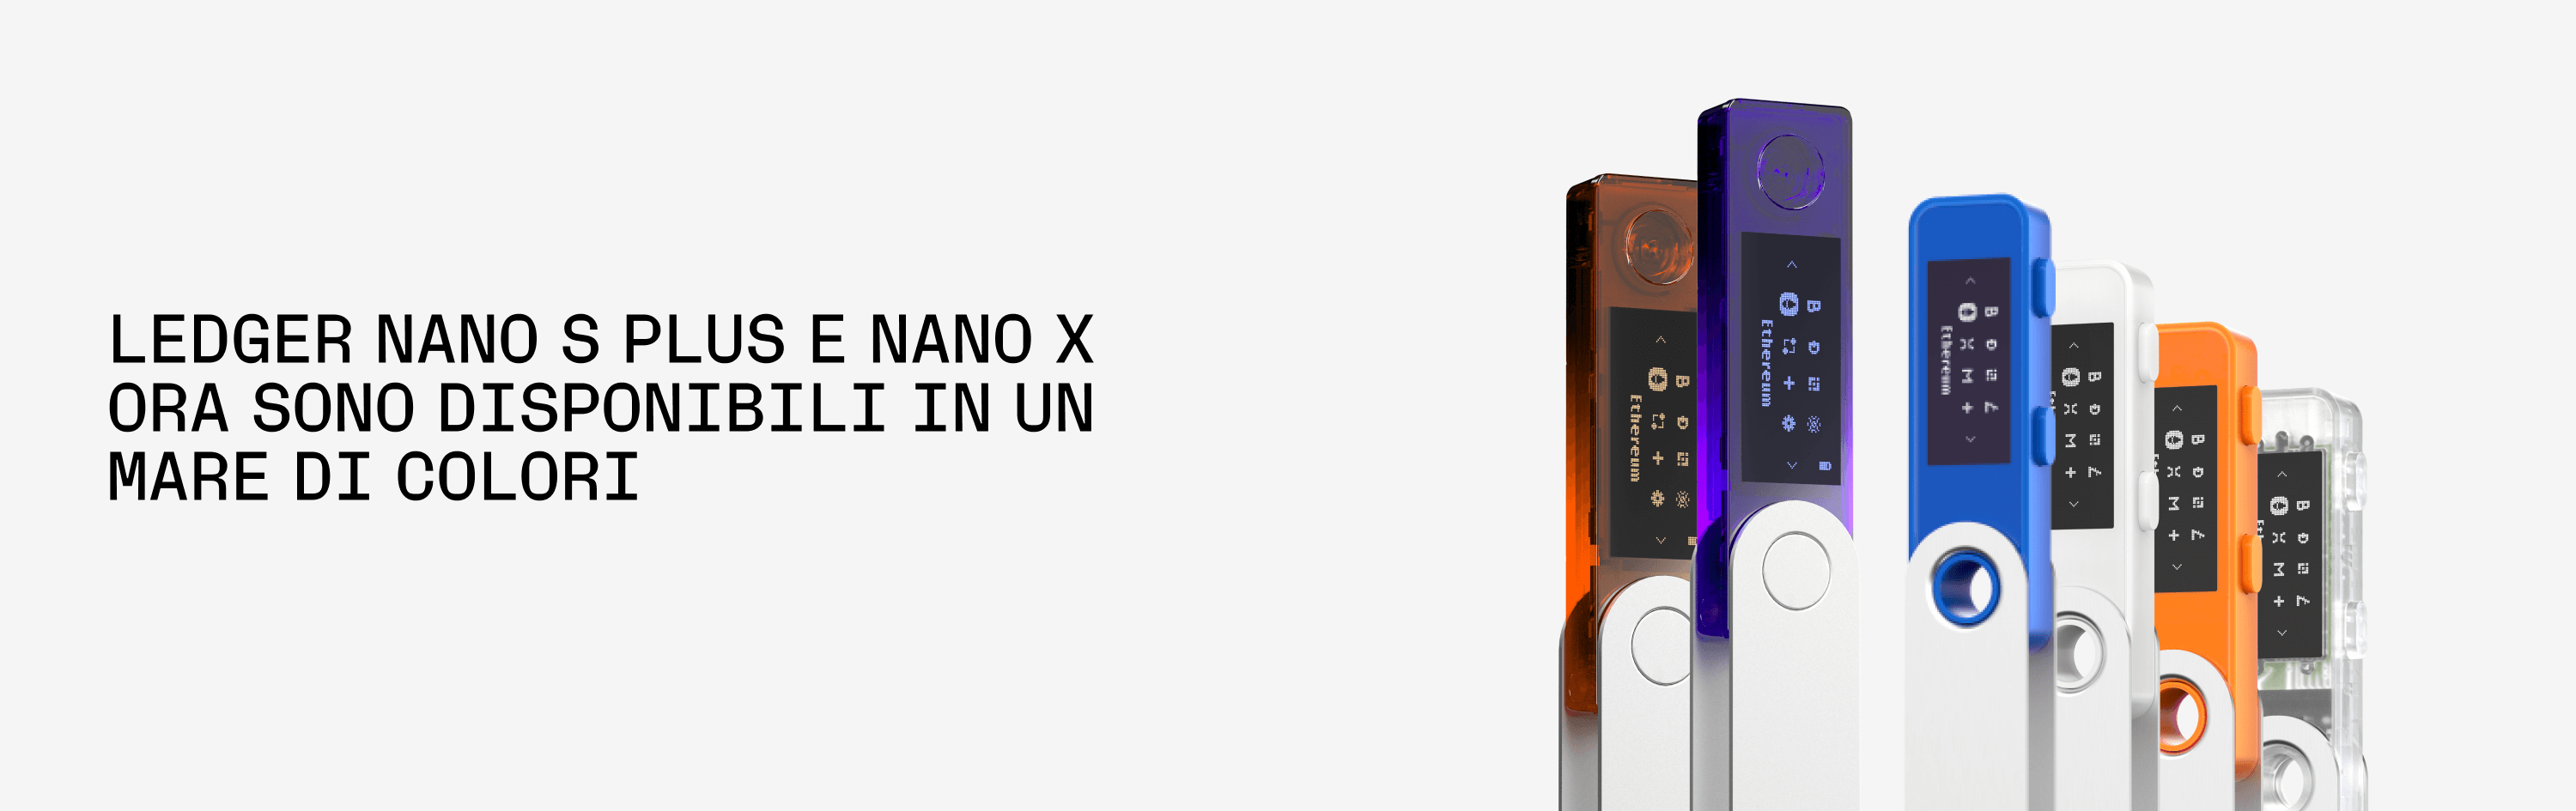 Wallet Ledger Nano S Plus e Nano X in offerta su Amazon